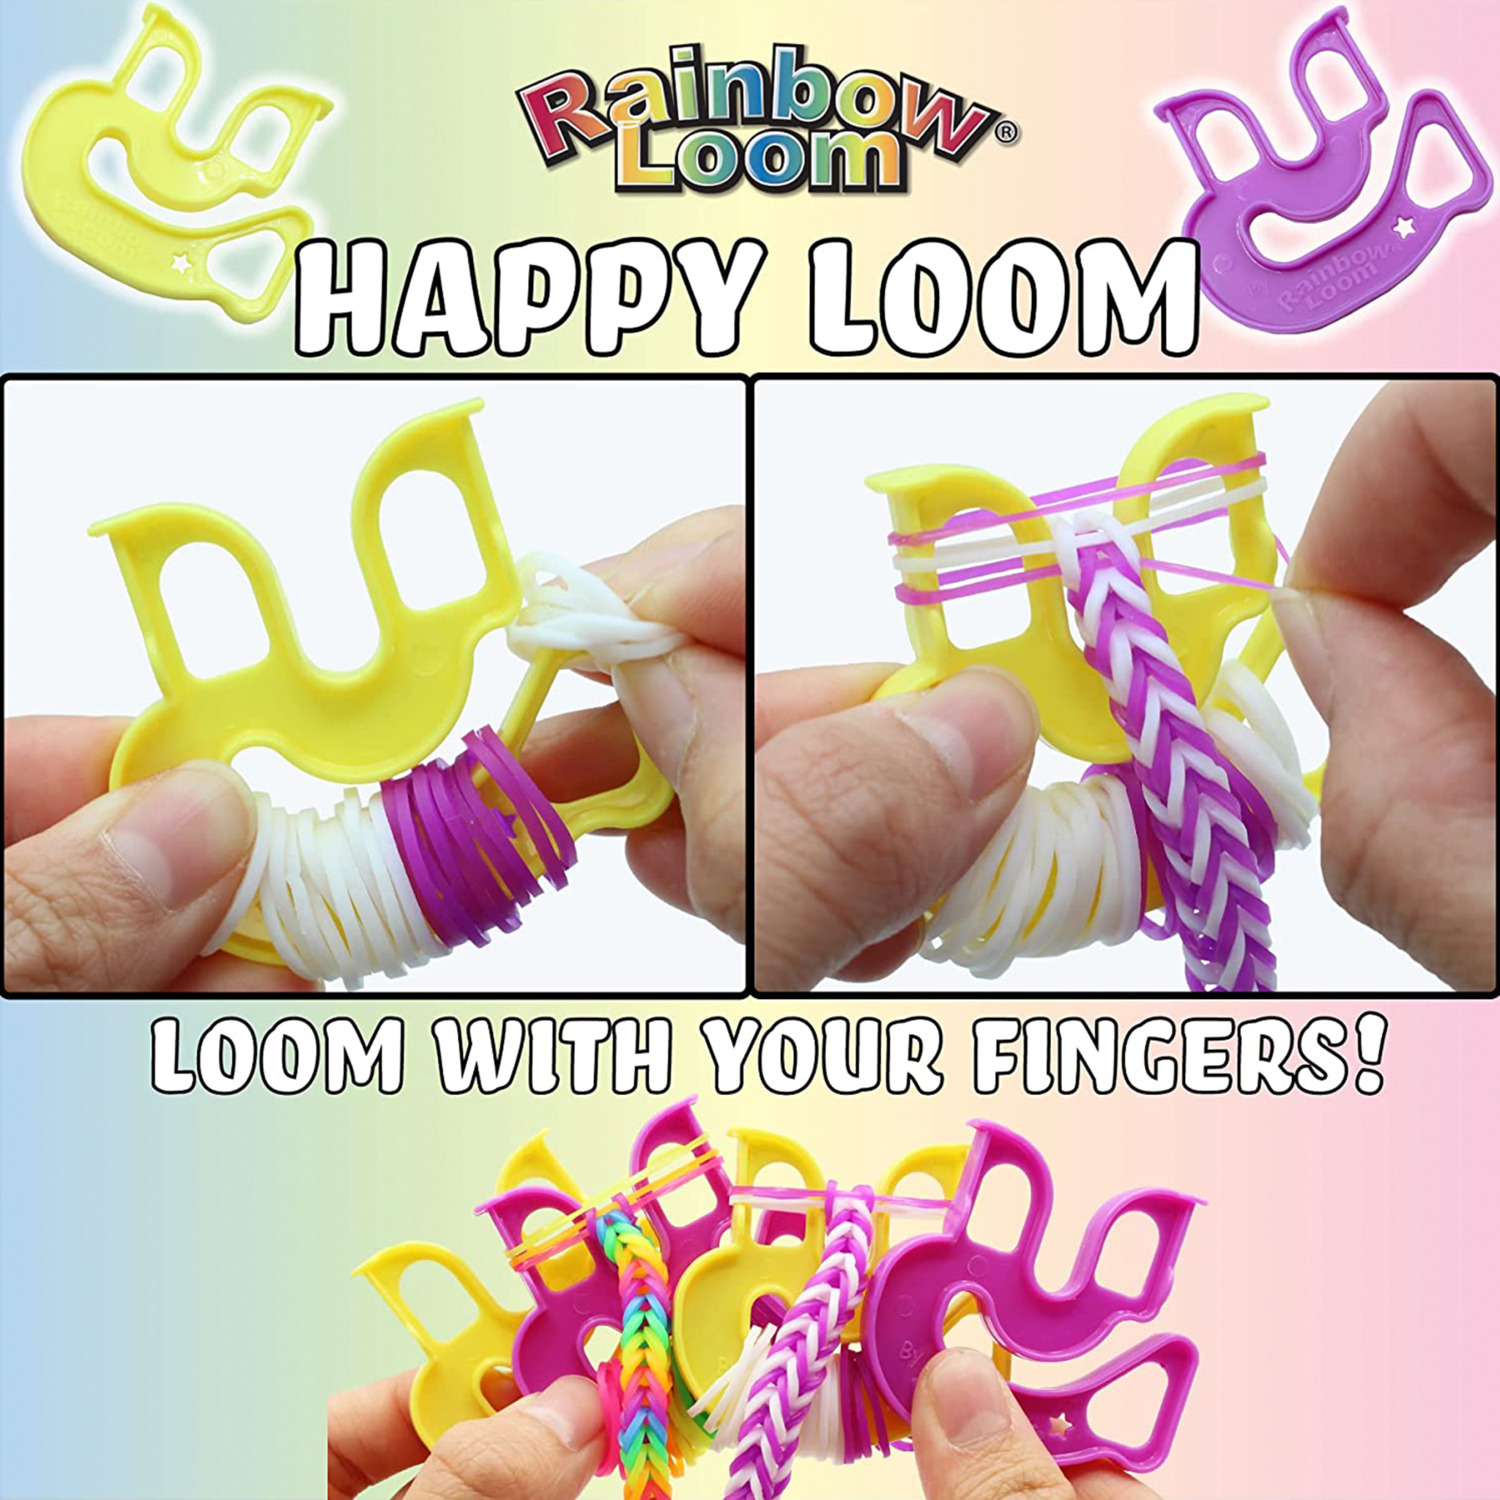 Rainbow Loom Loomi-Pals Combo Set Bracelet Kit